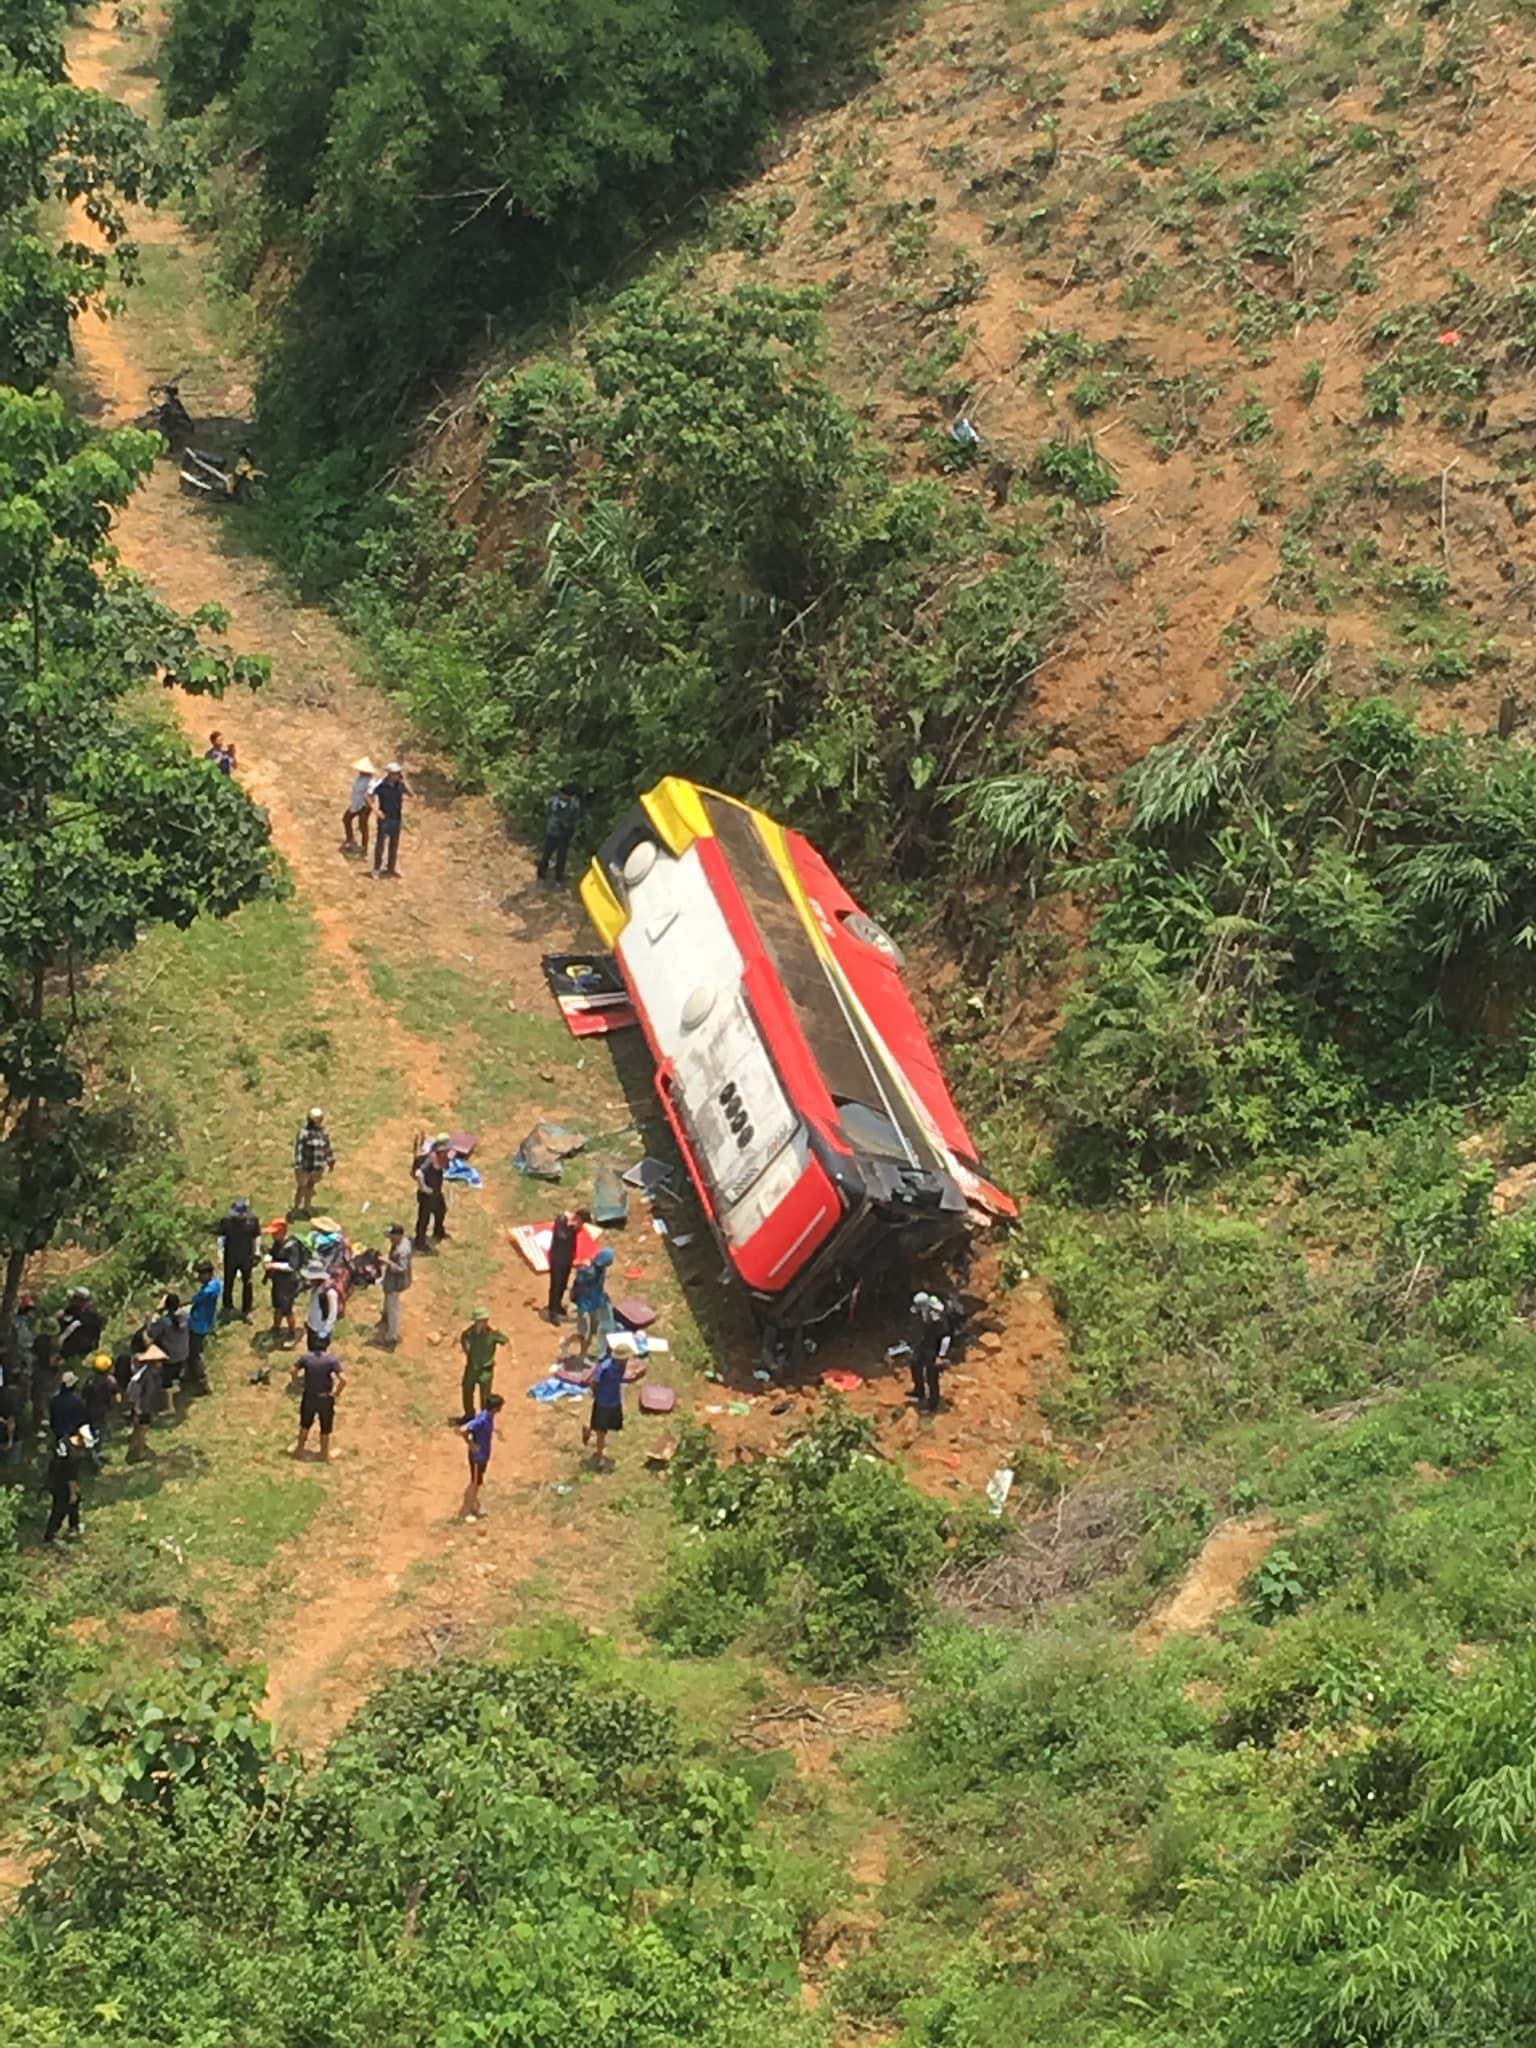 Xe du lịch chở khách người nước ngoài lao xuống sườn đồi, 3 người bị thương tích - Ảnh 1.